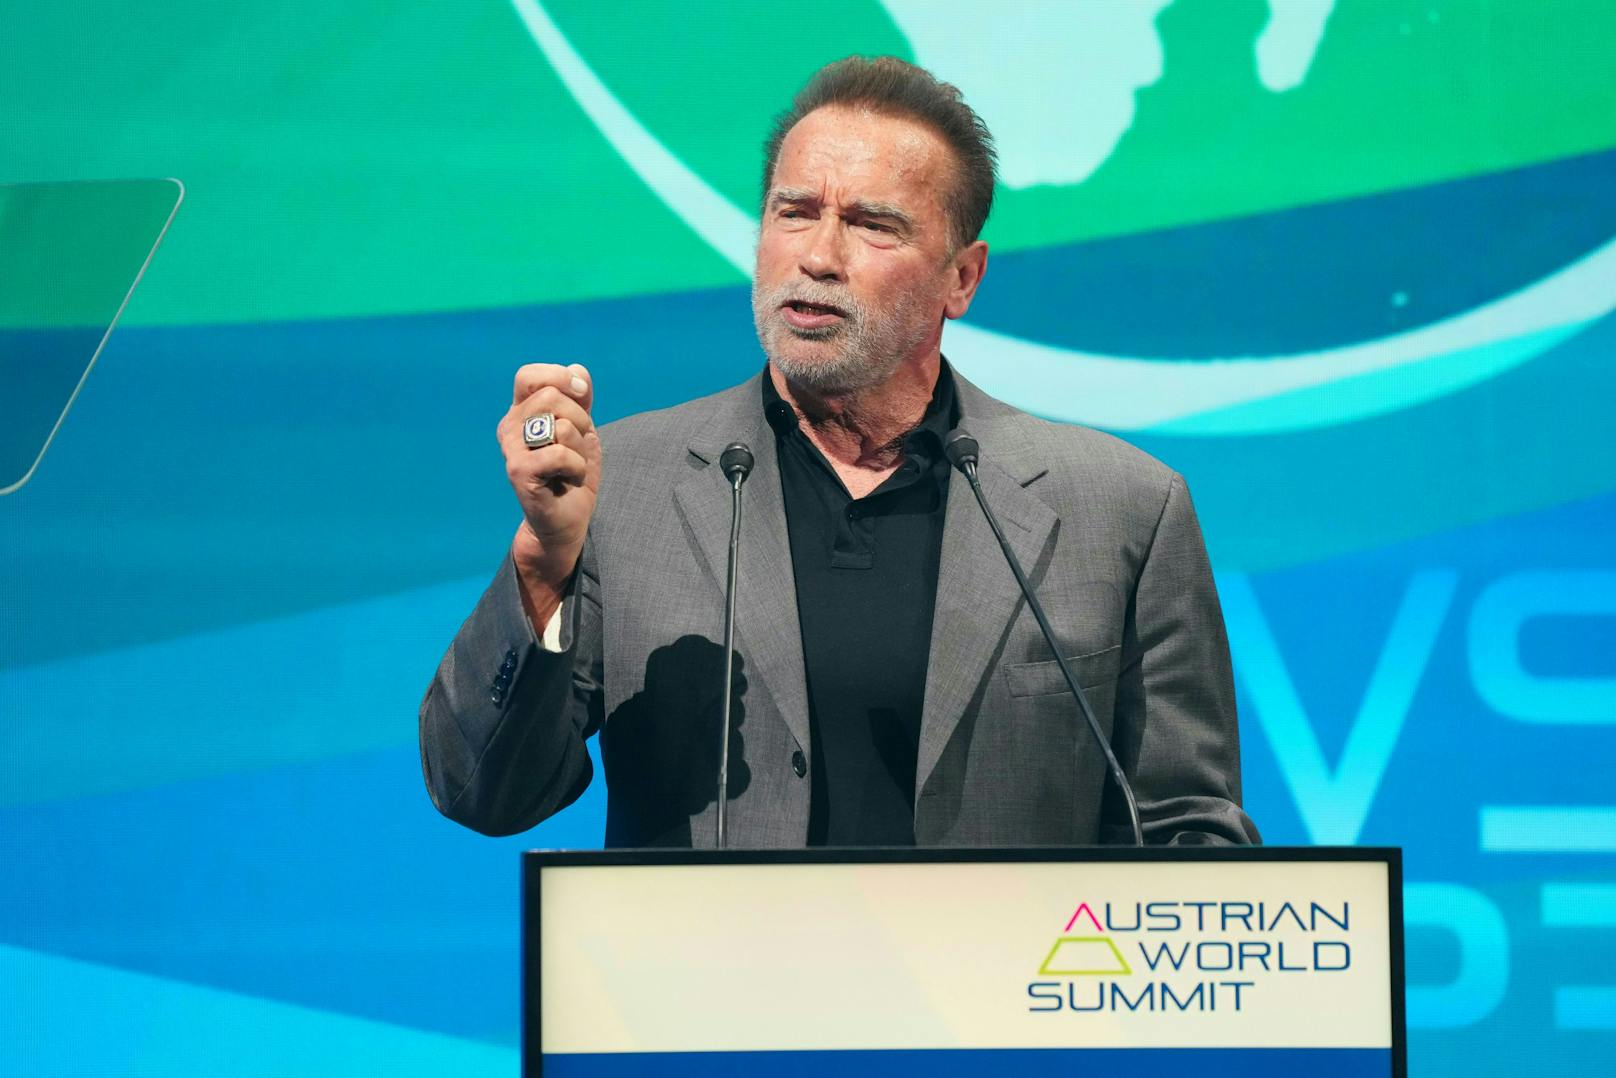 Arnold Schwarzenegger könnte sich eine US-Präsidentschaft sehr gut vorstellen. "Ich sehe so klar, dass ich diese Wahl gewinnen könnte", meint er.